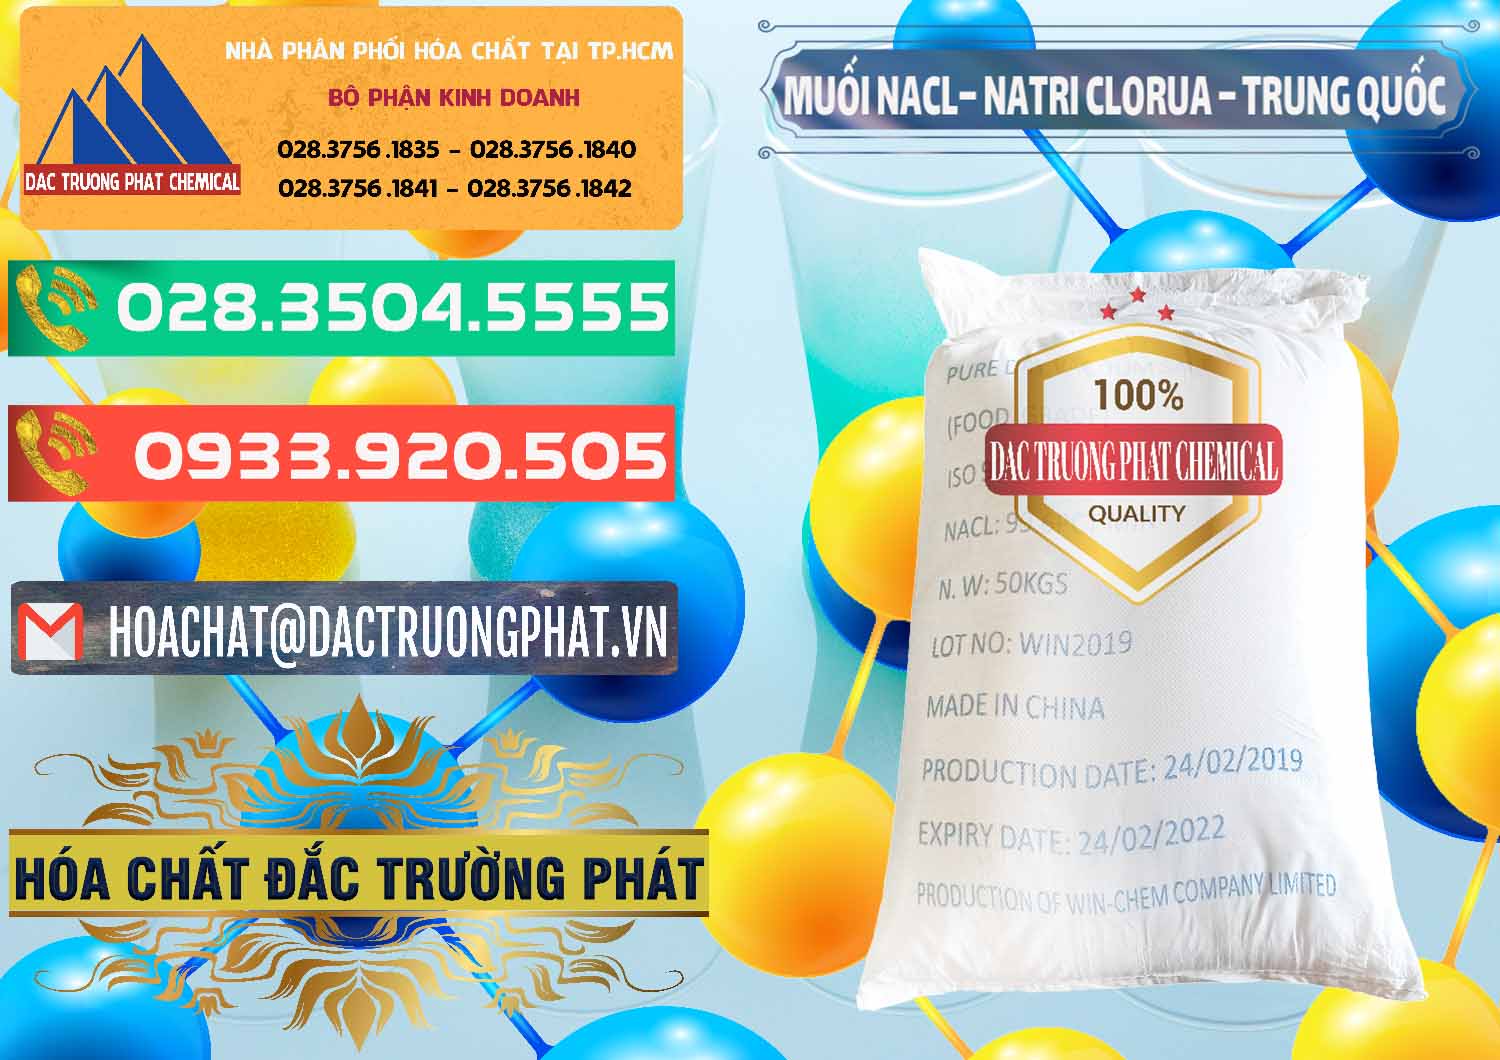 Cty bán & cung ứng Muối NaCL – Sodium Chloride Trung Quốc China - 0097 - Phân phối & kinh doanh hóa chất tại TP.HCM - congtyhoachat.com.vn